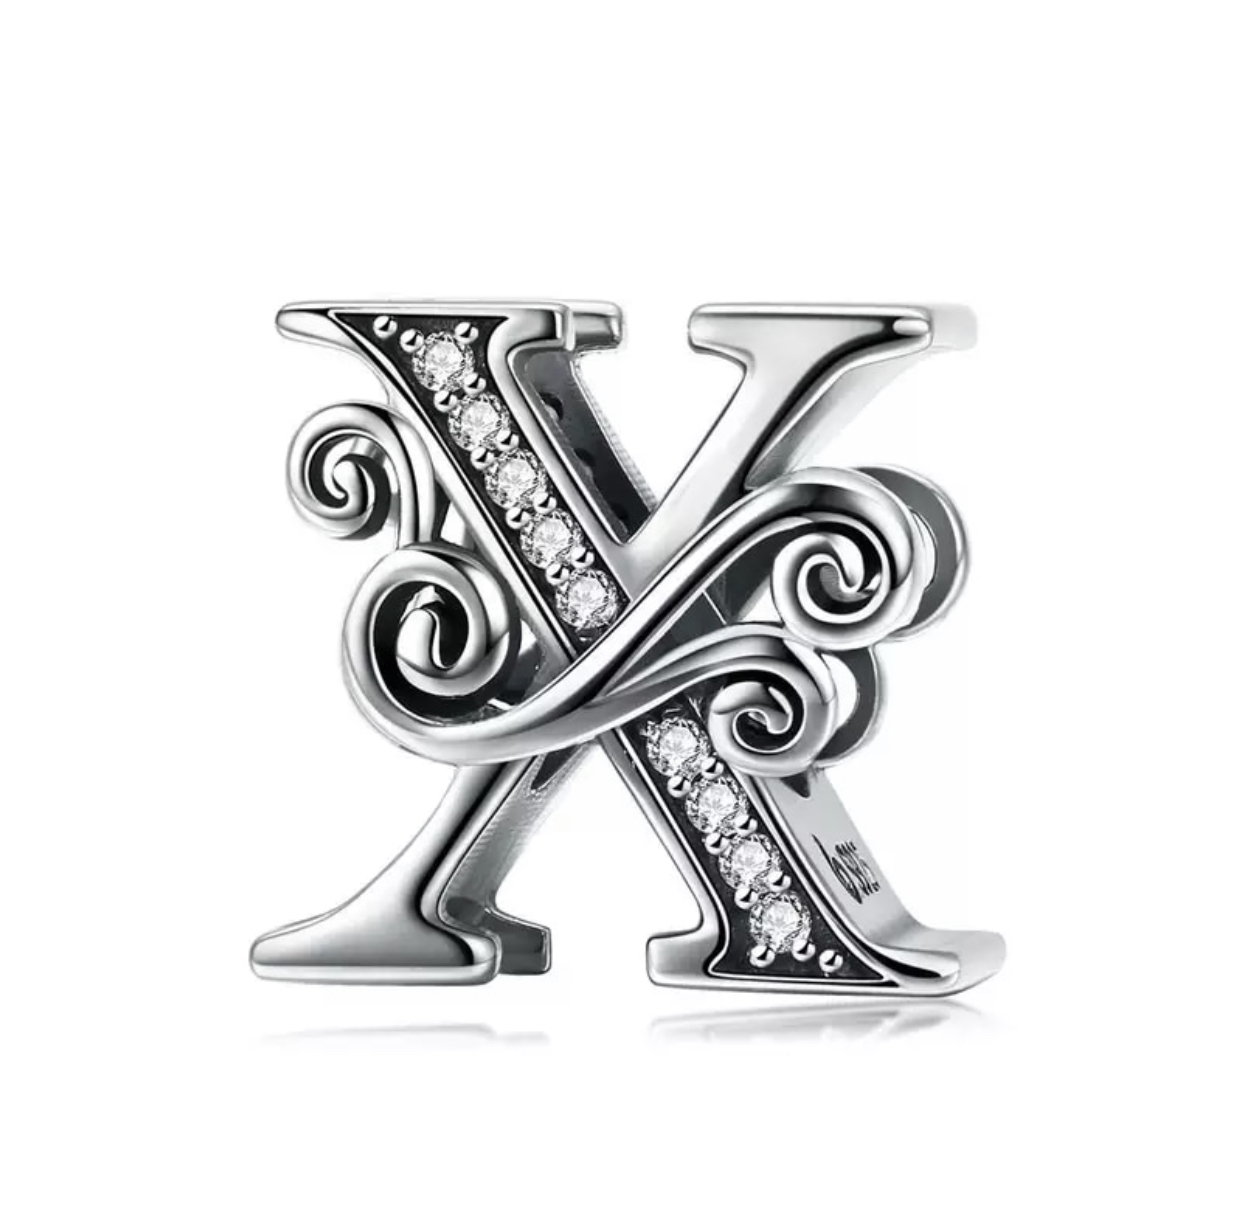 Product Afbeelding Vooraanzicht van onze prachtige sierletter X uit de collectie letters en cijfers. De letter X is gemaakt van 925 sterling zilver en ingelegd met zikronia stenen. Verder heeft de X letter versiersels over de letter heen.